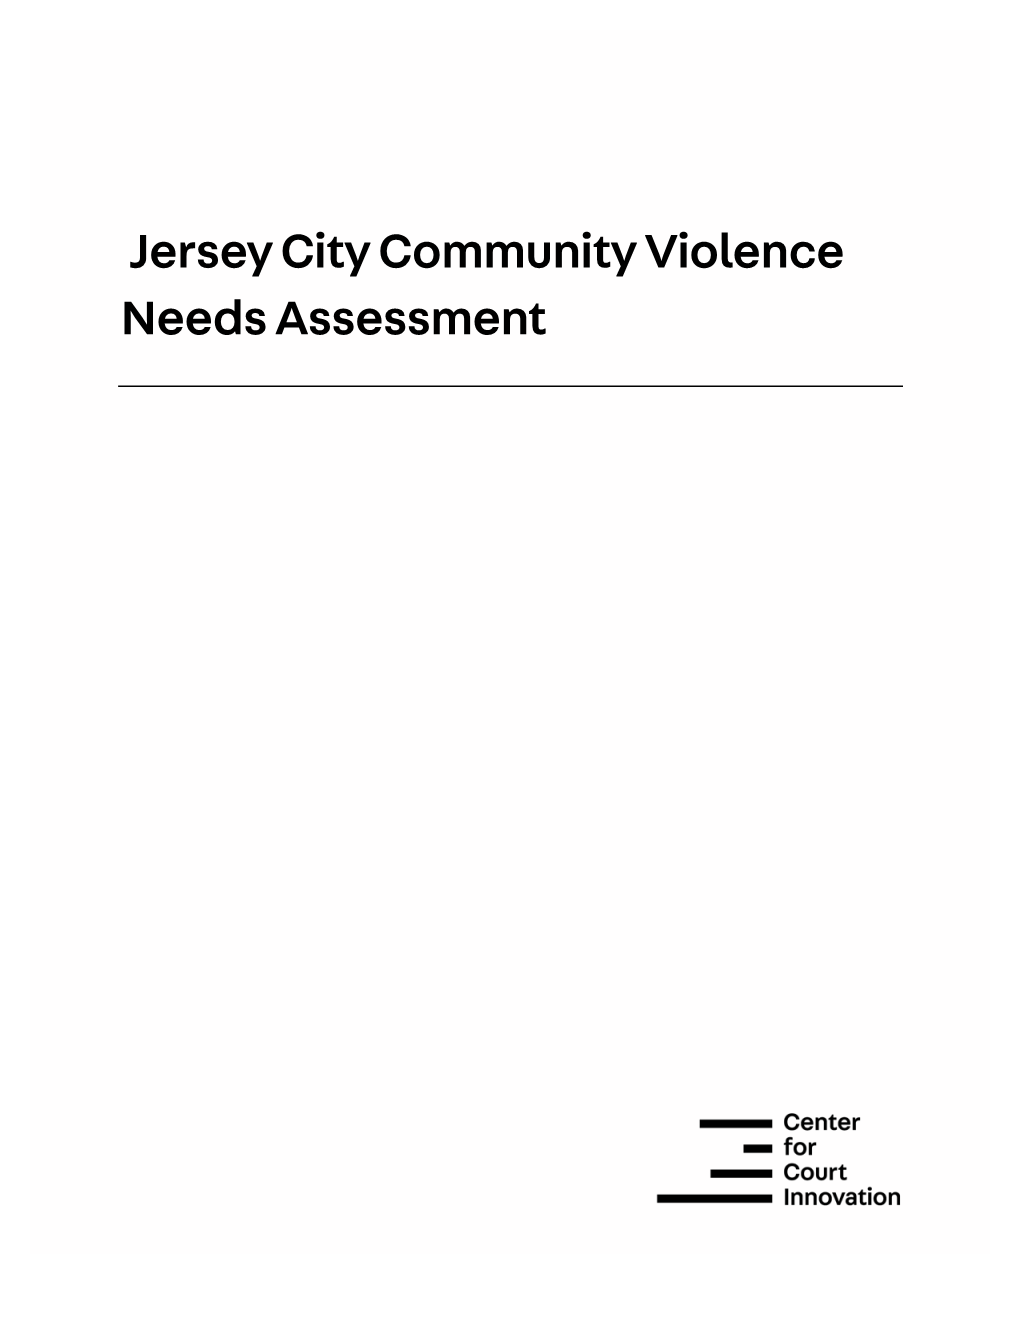 Jersey City Community Violence Needs Assessment